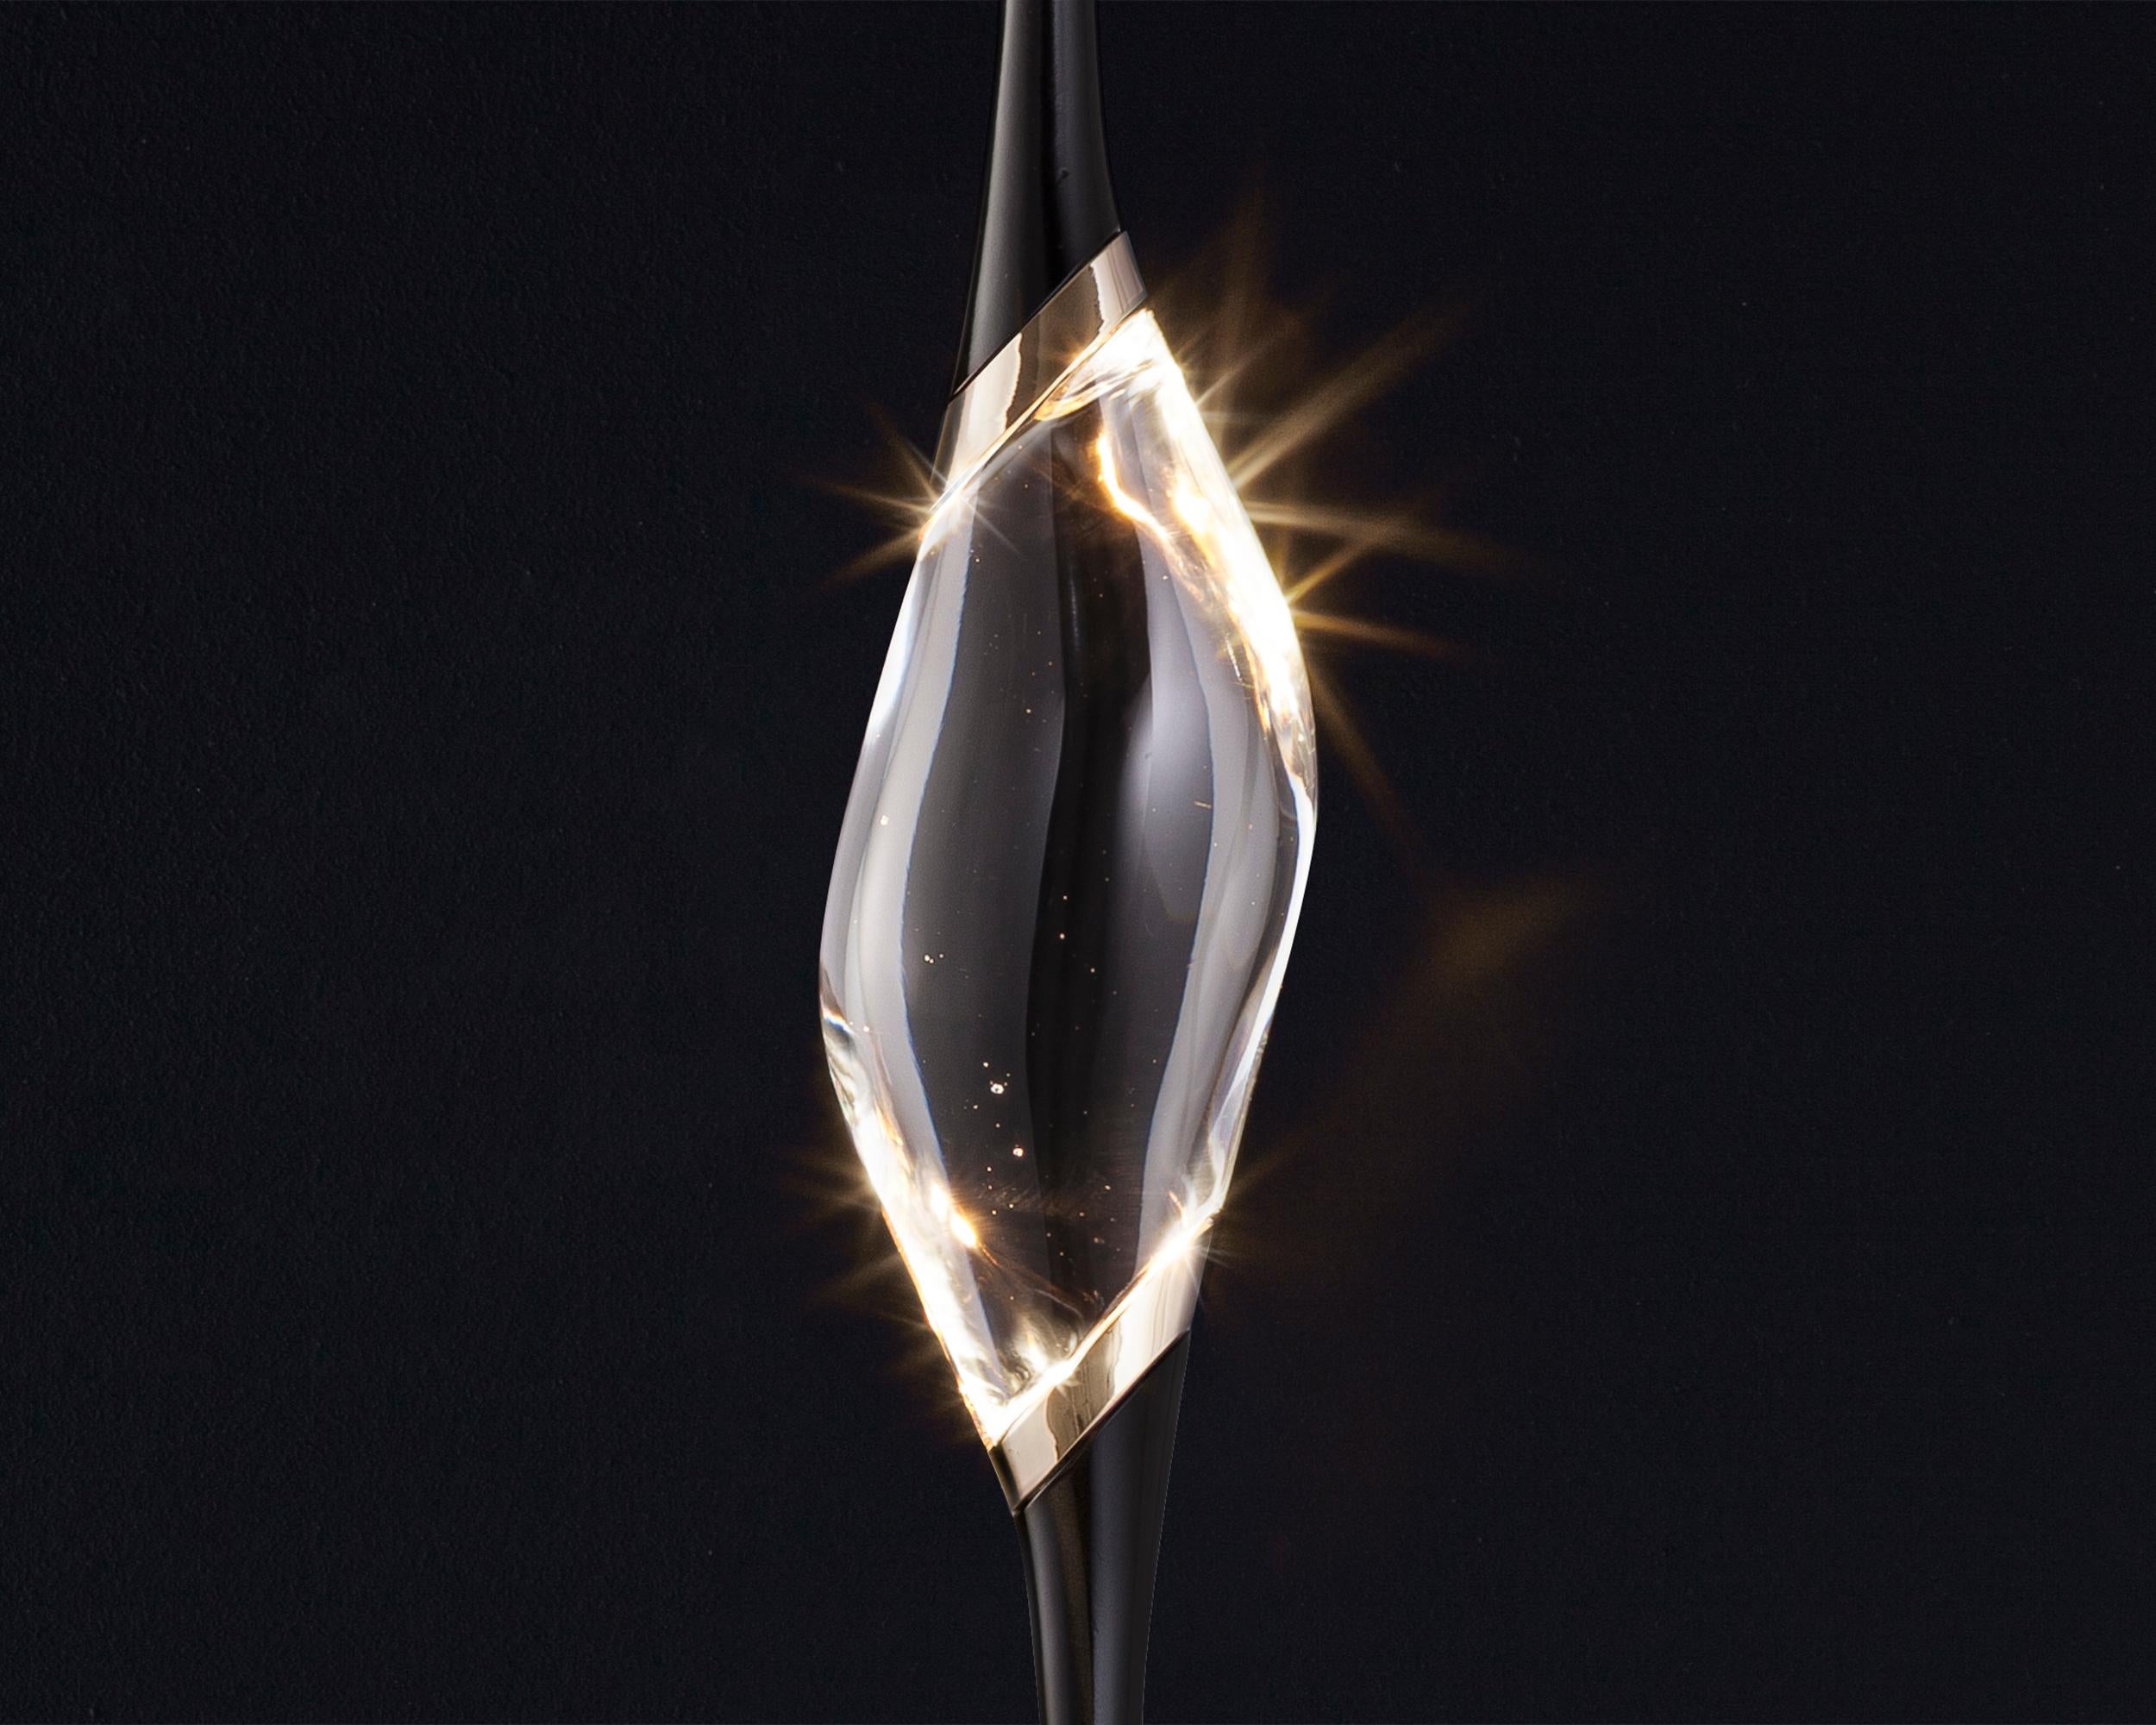 Die Il Pezzo 12 Stehleuchte hat eine atemberaubende kreisförmige Form, die die drei Lichtquellen in ihrer endlosen Rotation trägt und von einem Marmorsockel getragen wird, der die
seine Sauberkeit und Reinheit. Die drei massiven Kristalle werden